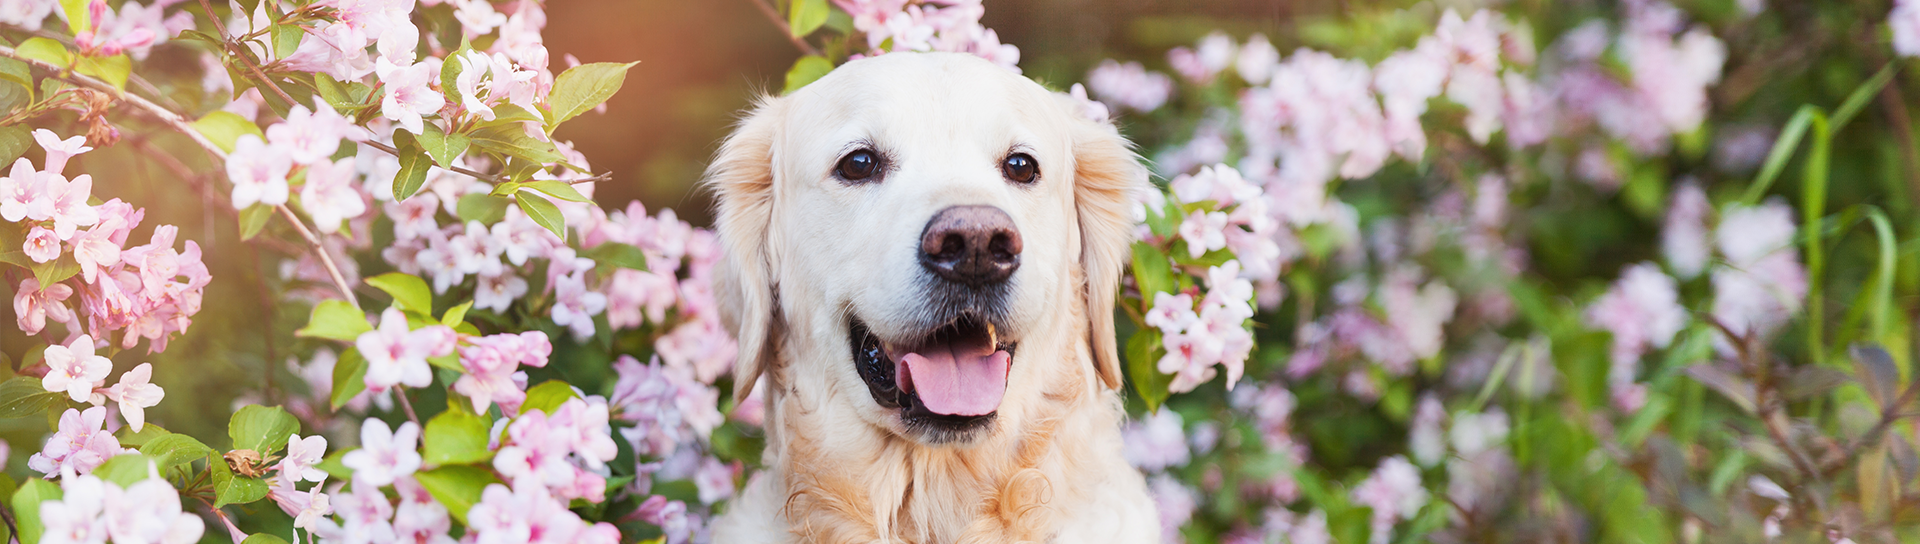 Dog among flowers